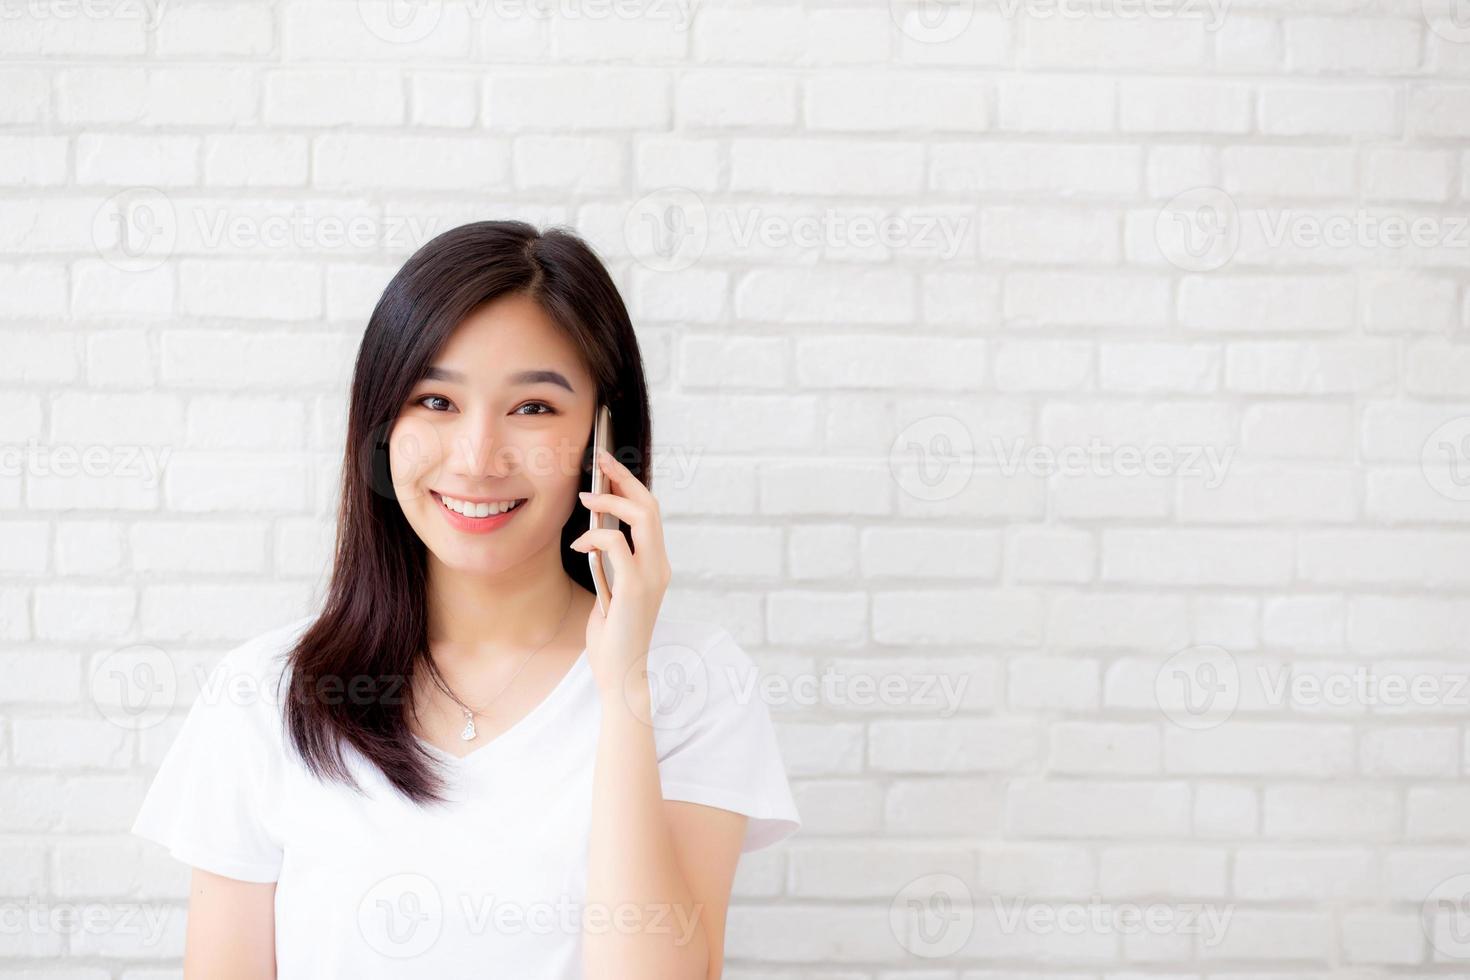 belle de portrait jeune femme asiatique parler téléphone intelligent et sourire debout sur fond de brique de ciment, femme indépendante appelant le téléphone, communication du concept mobile. photo